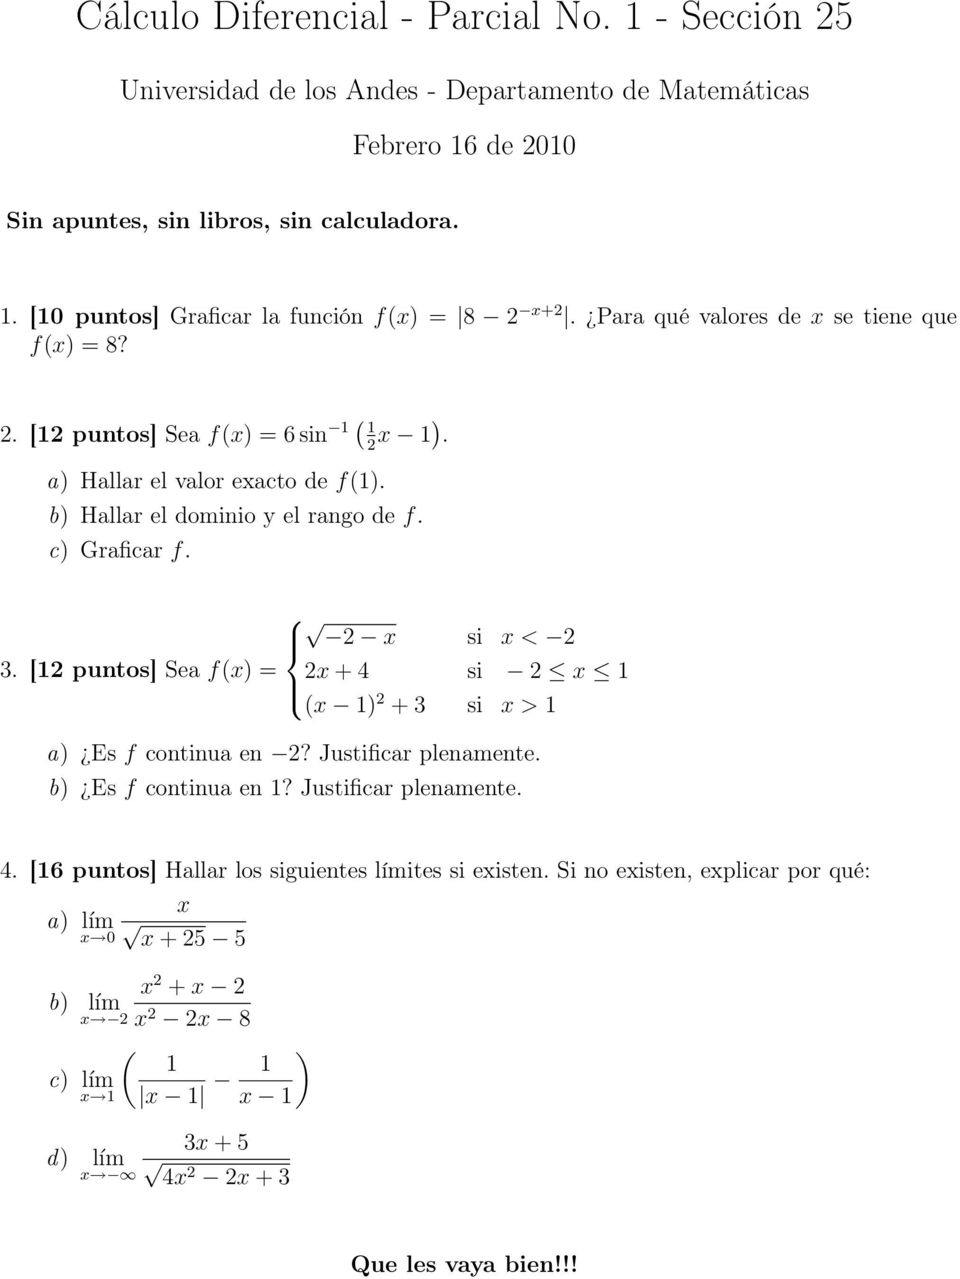 [12 puntos] Sea f(x) = 2x + 4 si 2 x 1 (x 1) 2 + 3 si x > 1 a) Es f continua en 2? Justificar plenamente. b) Es f continua en 1? Justificar plenamente. 4. [16 puntos] Hallar los siguientes límites si existen.